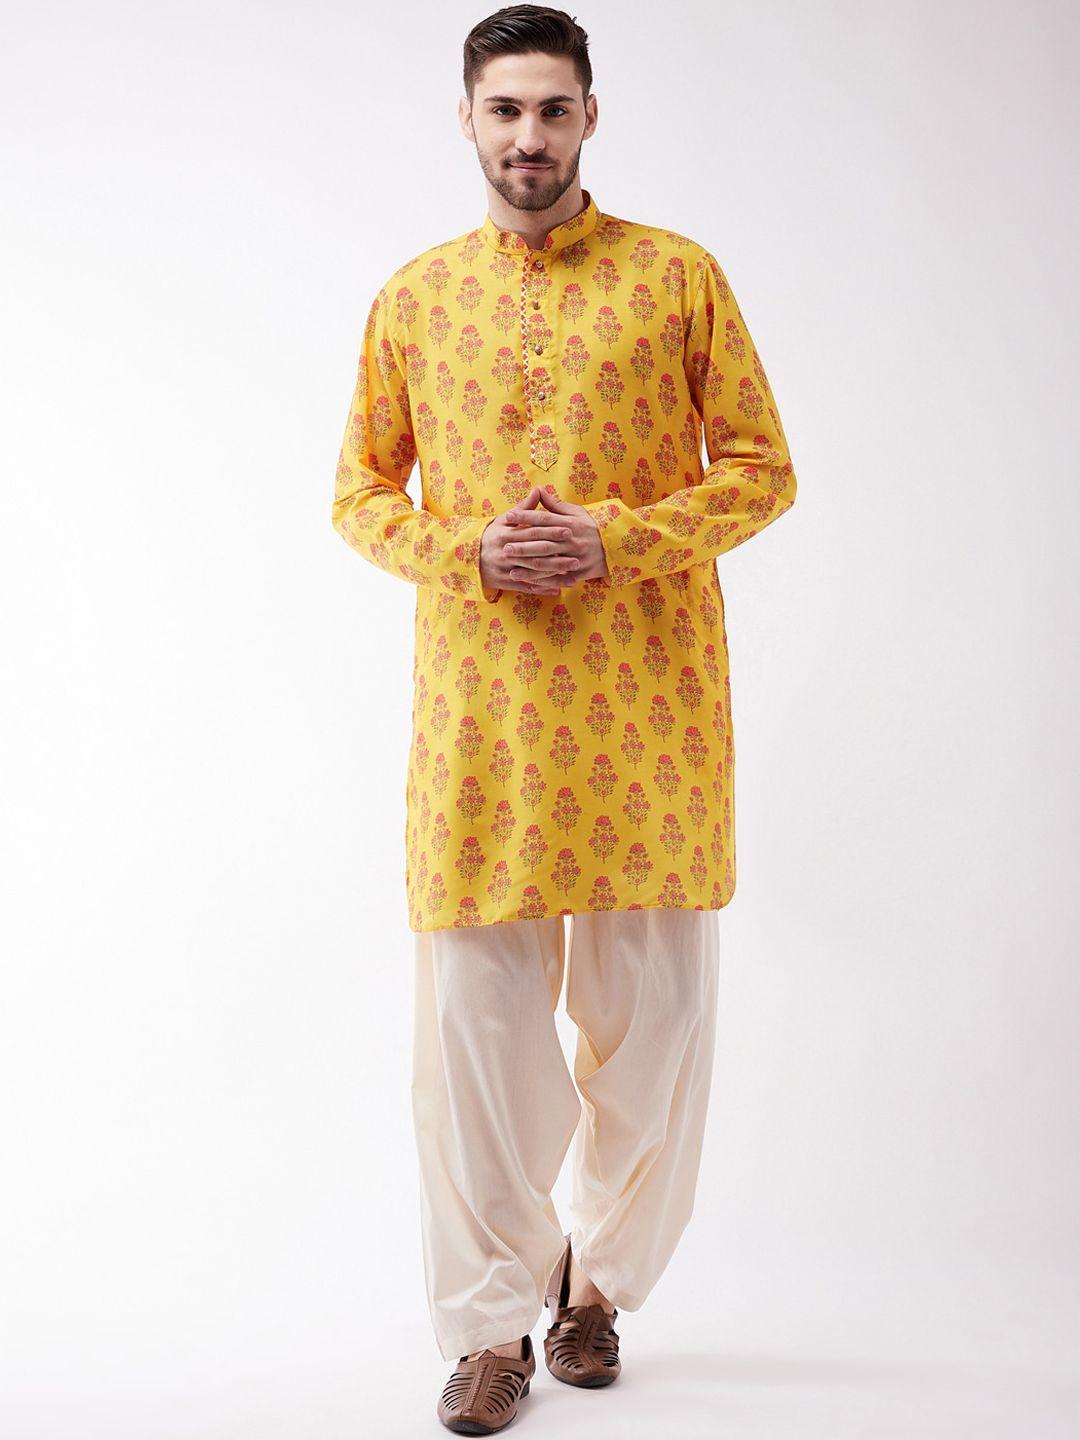 vastramay men mustard yellow & pink ethnic motifs printed kurta with patiala